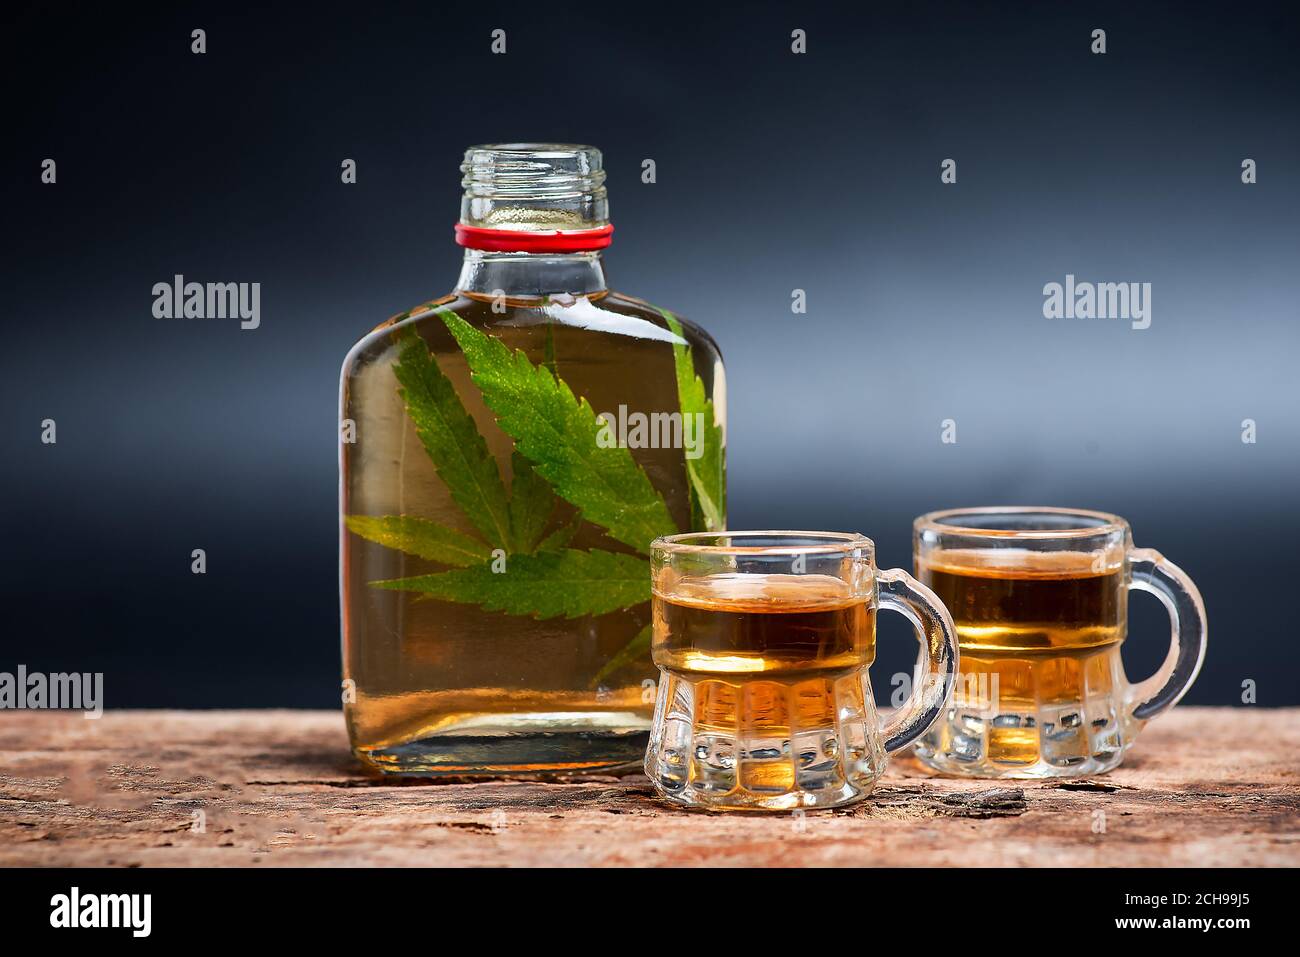 Alkoholisches Getränk wie Whiskey Brandy oder Schnaps mit Cannabis infundiert Blätter in der Flasche auf dem Tisch mit dunkler Kopie Platz Stockfoto